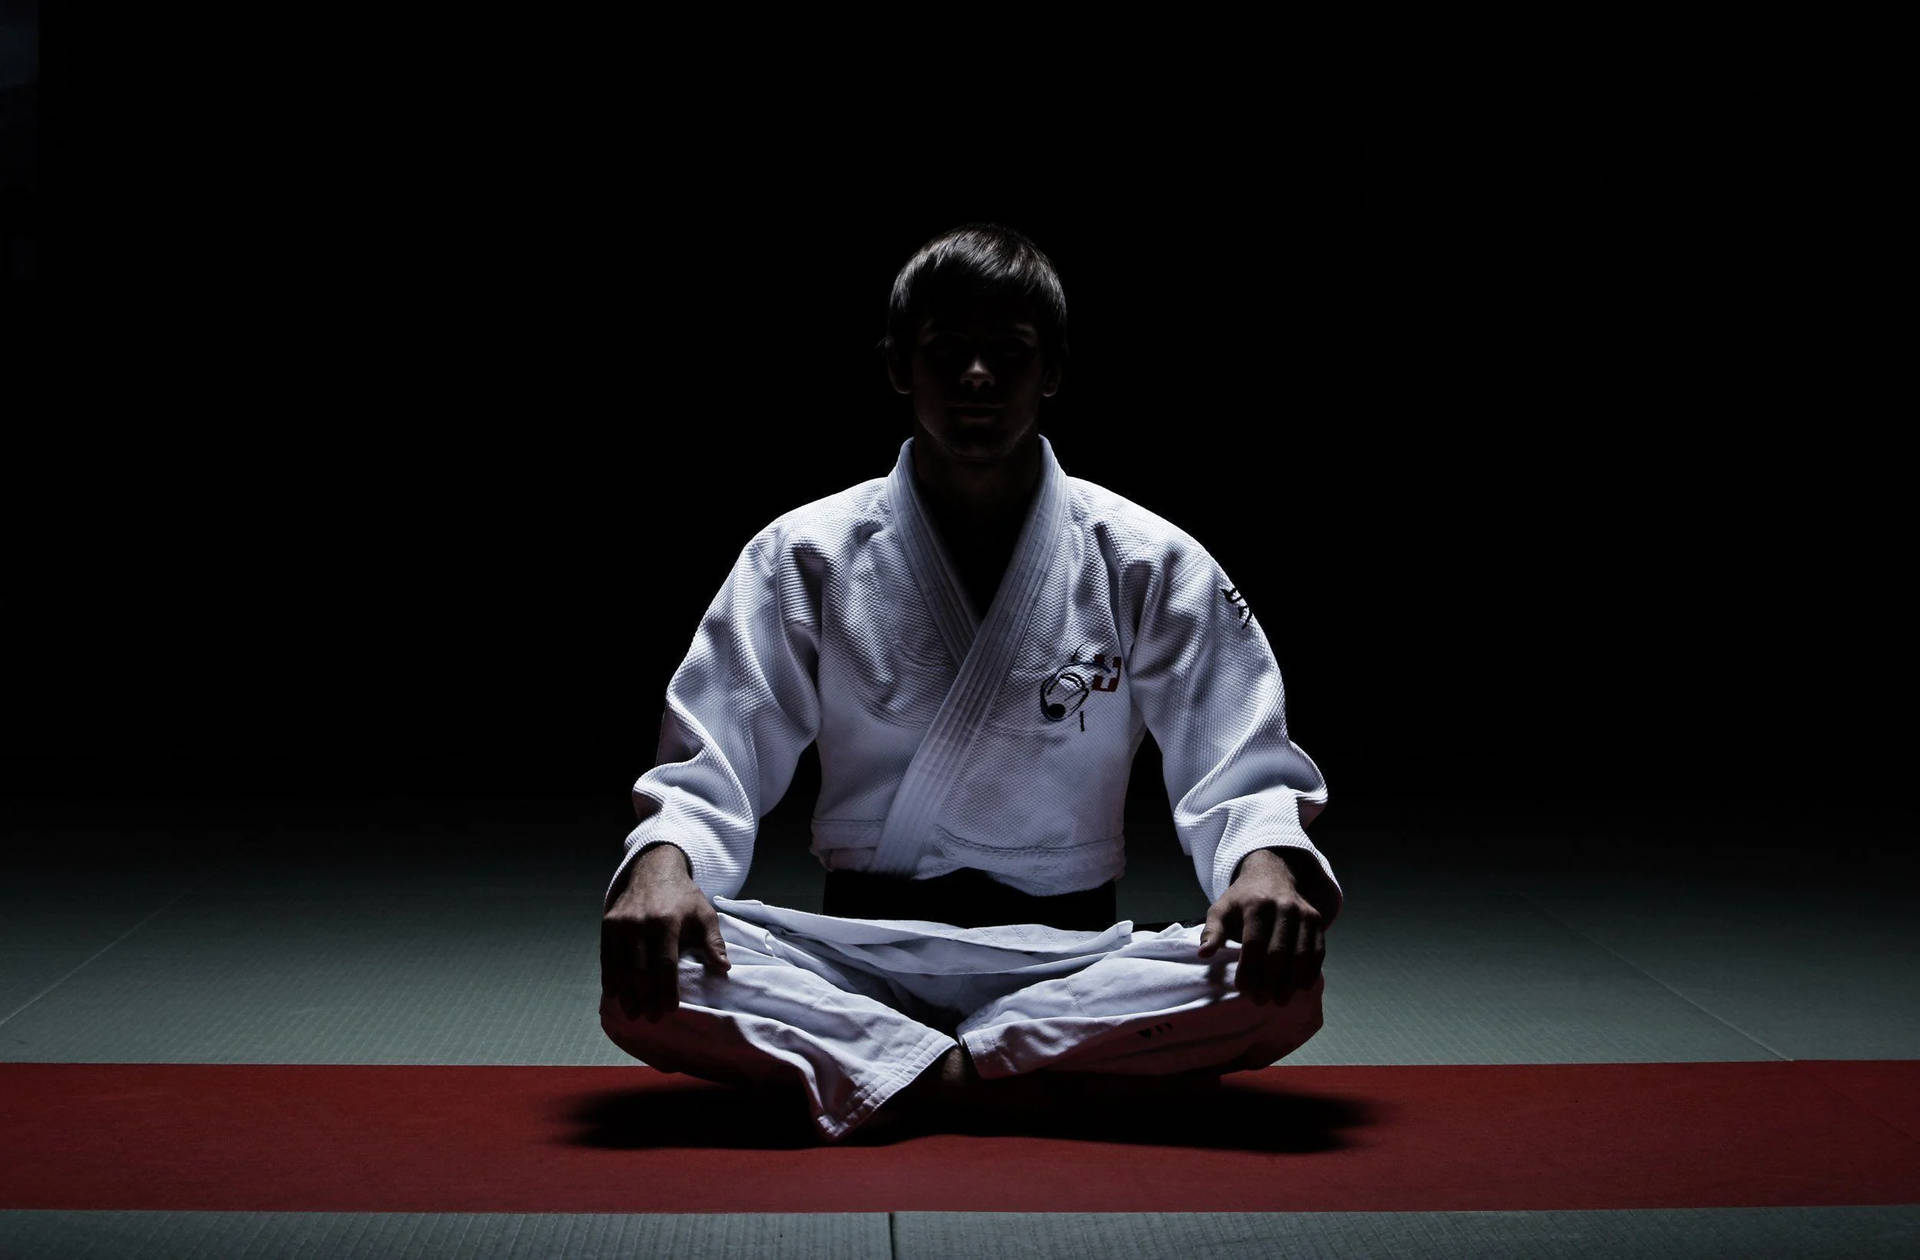 Judo In The Dark Background